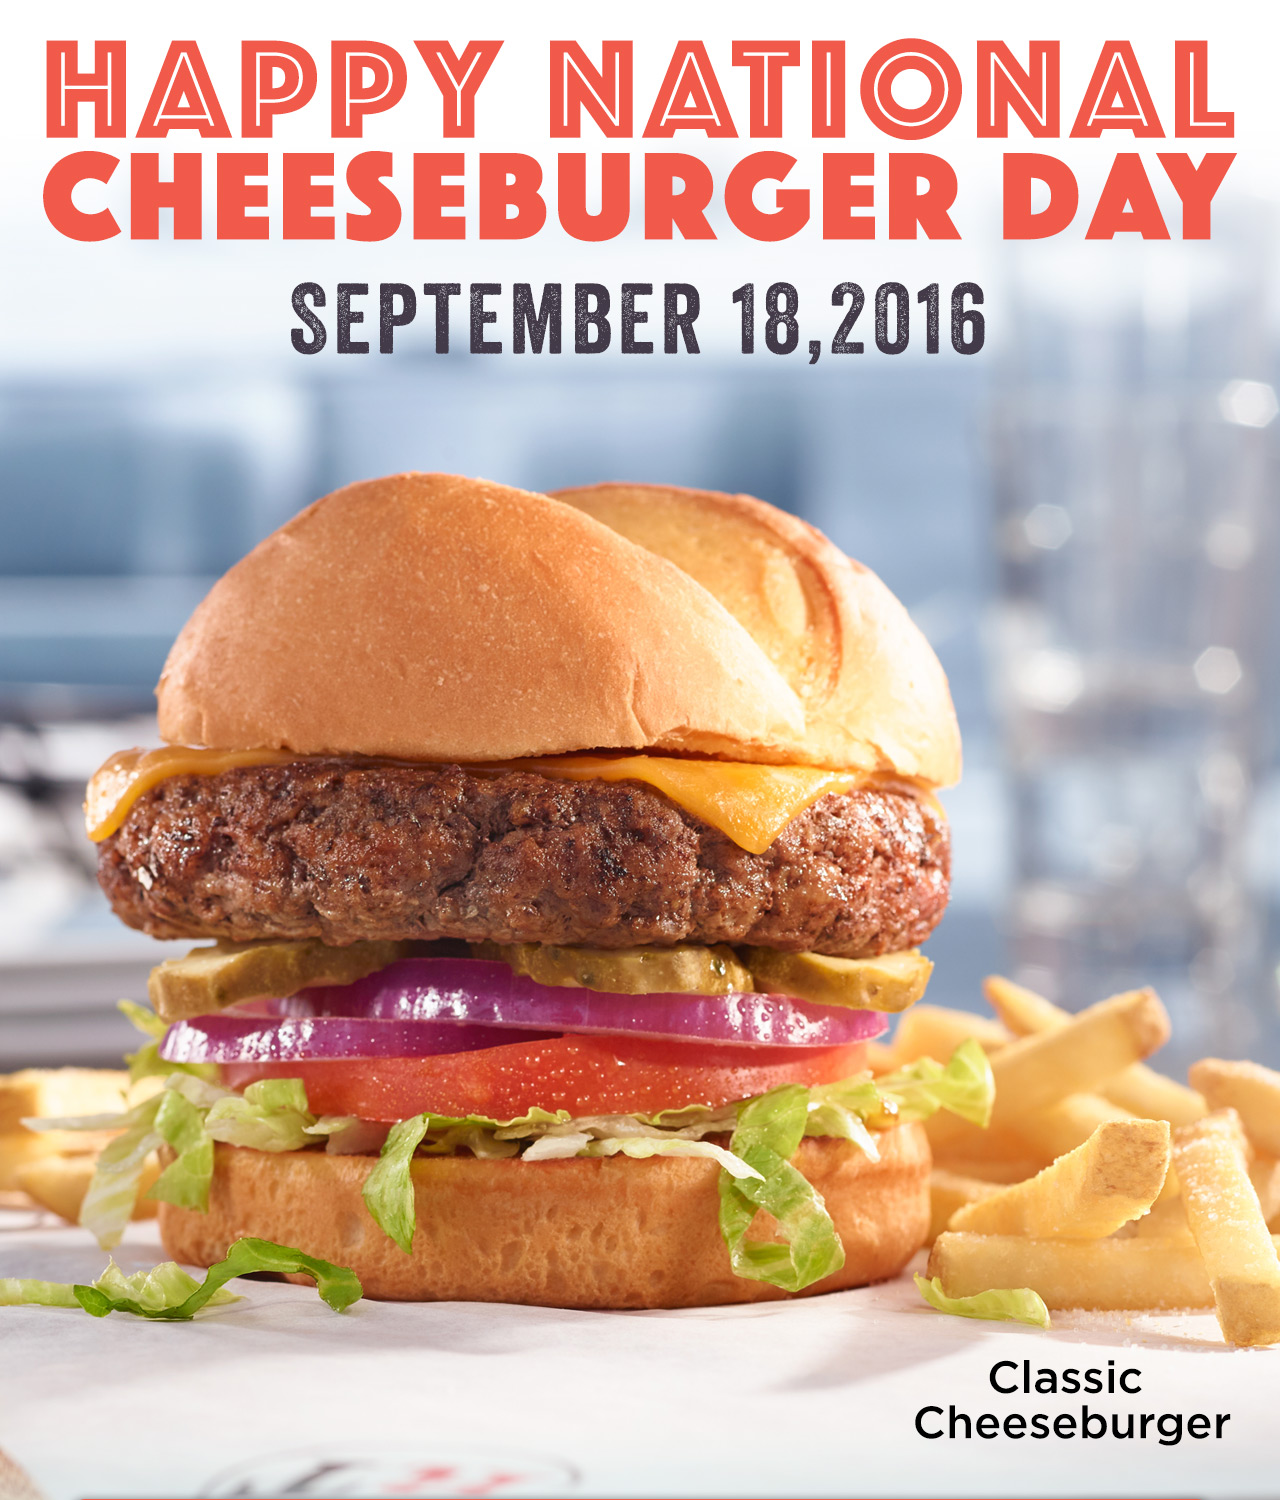 National Cheeseburger Day 2016